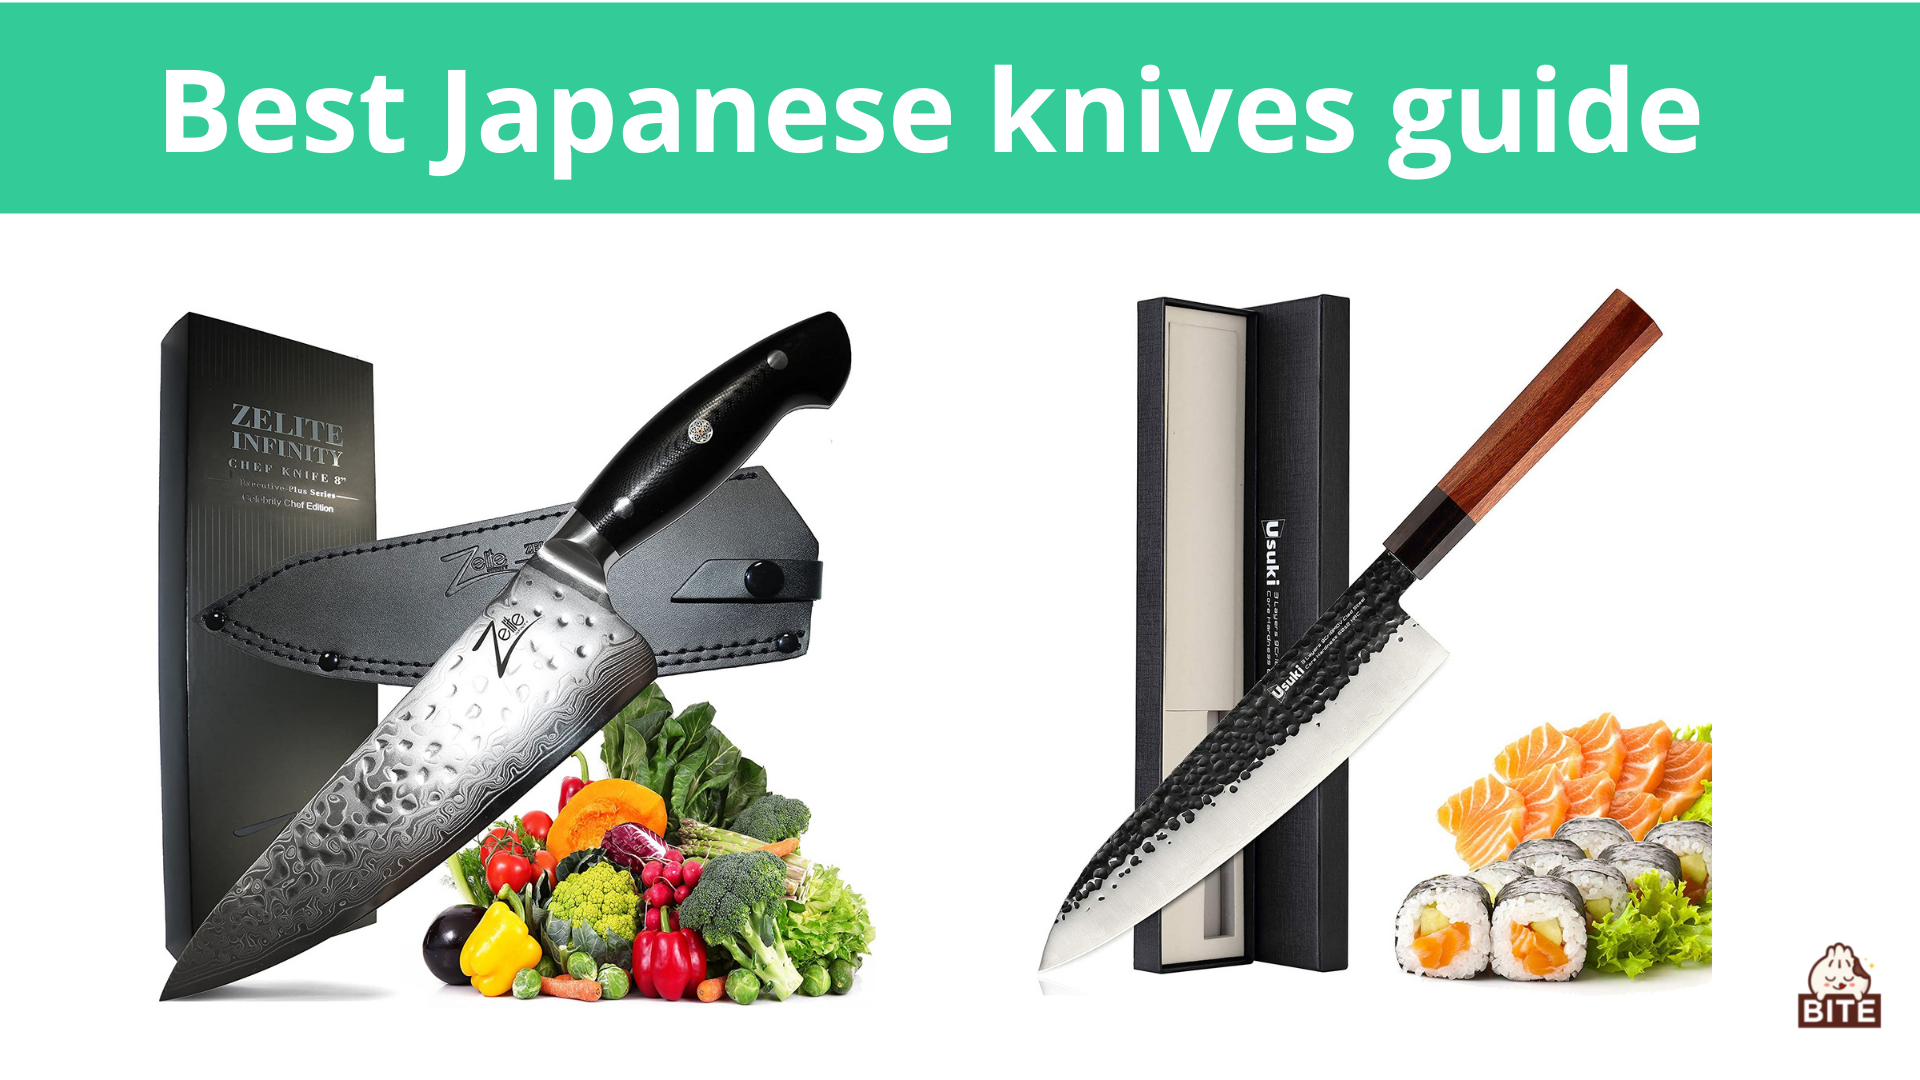 Bästa japanska knivguiden | Det här är de olika måste-ha-knivarna i japansk matlagning